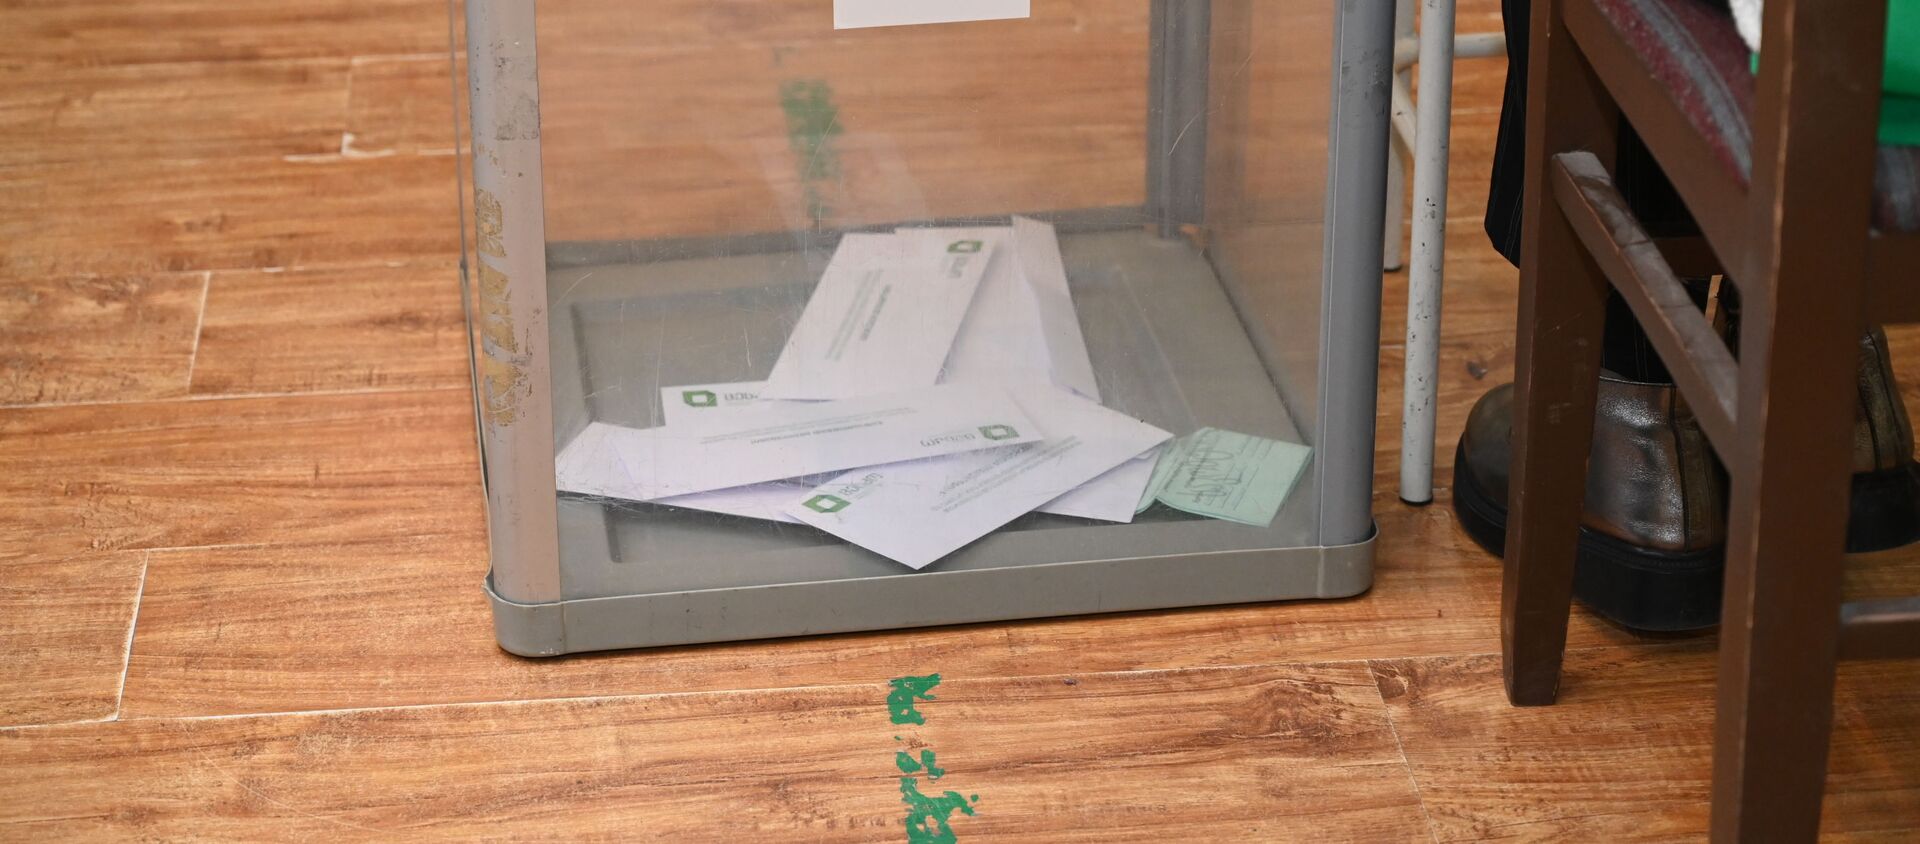 Парламентские выборы в Грузии - второй тур. 21 ноября 2020 года -  урна и бюллетени - Sputnik Грузия, 1920, 28.05.2021